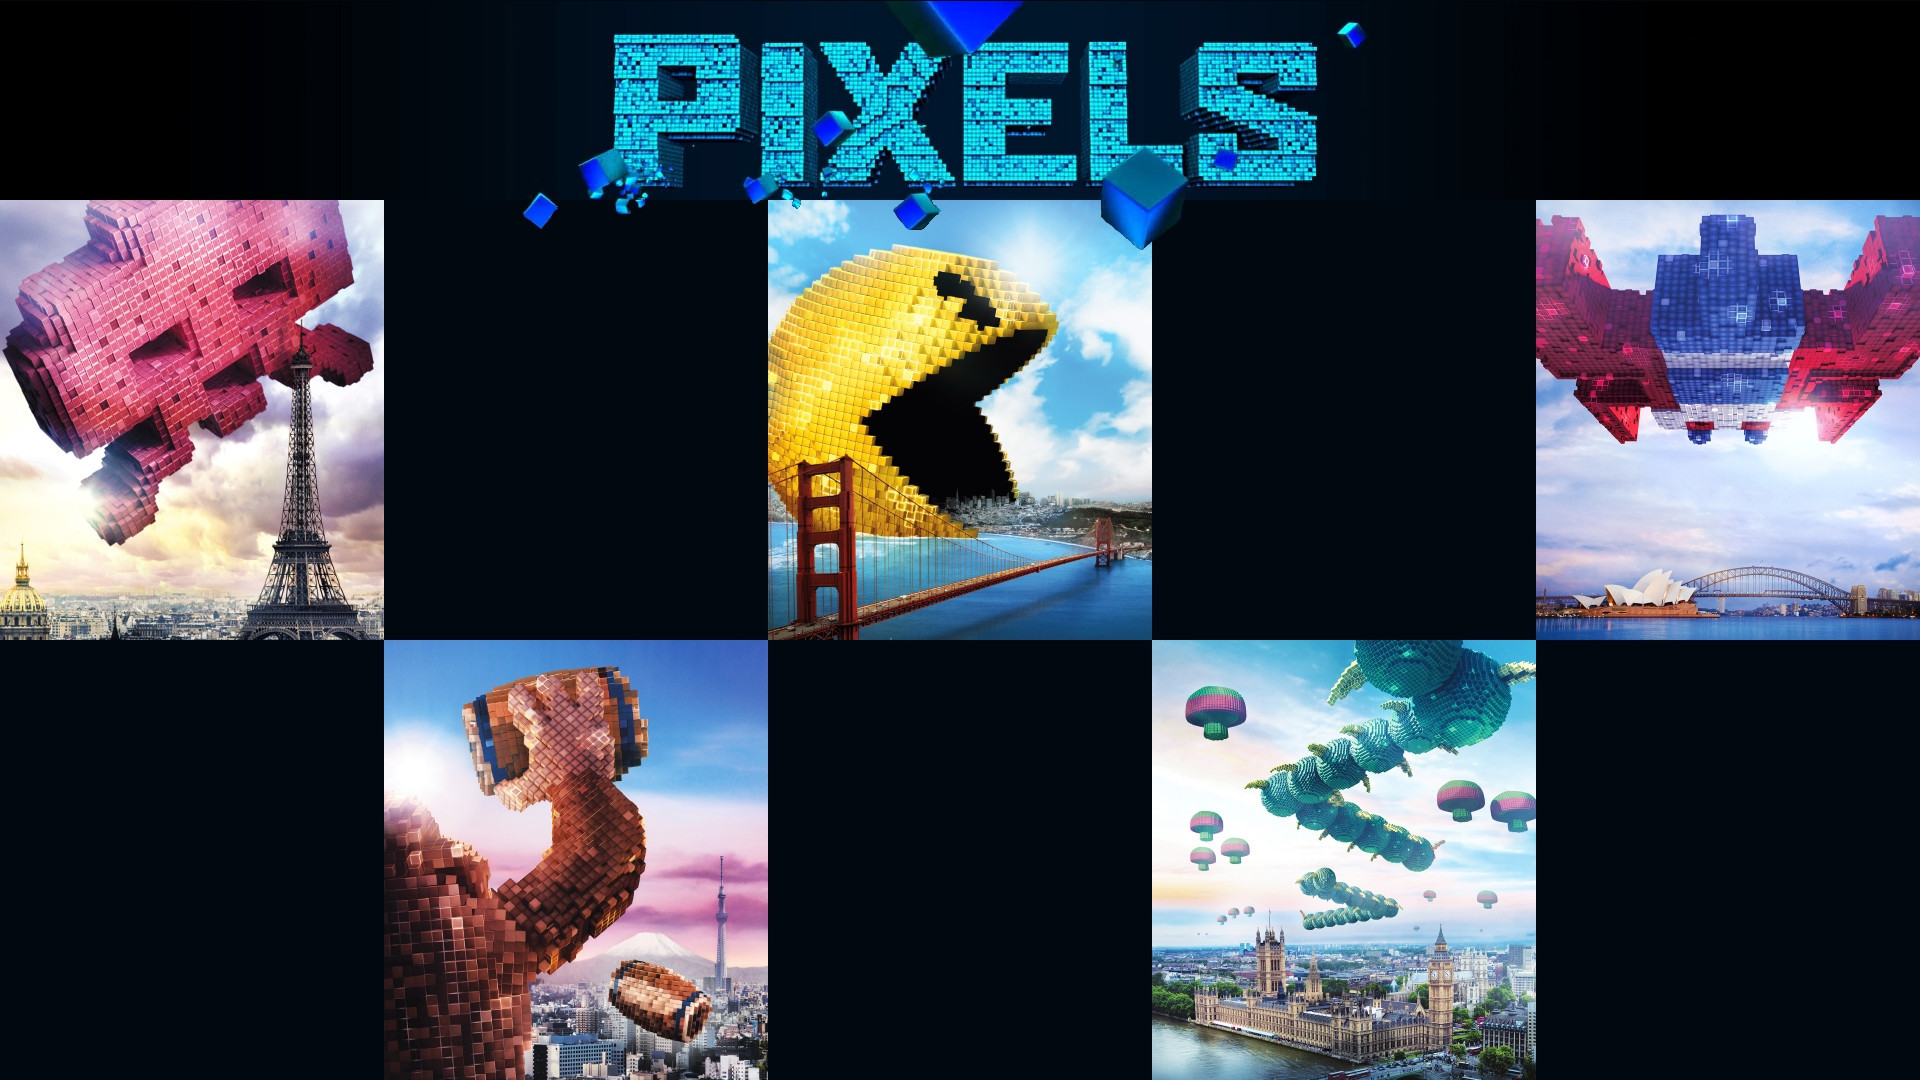 1920x1080 Pixels movie posters of arcade classics